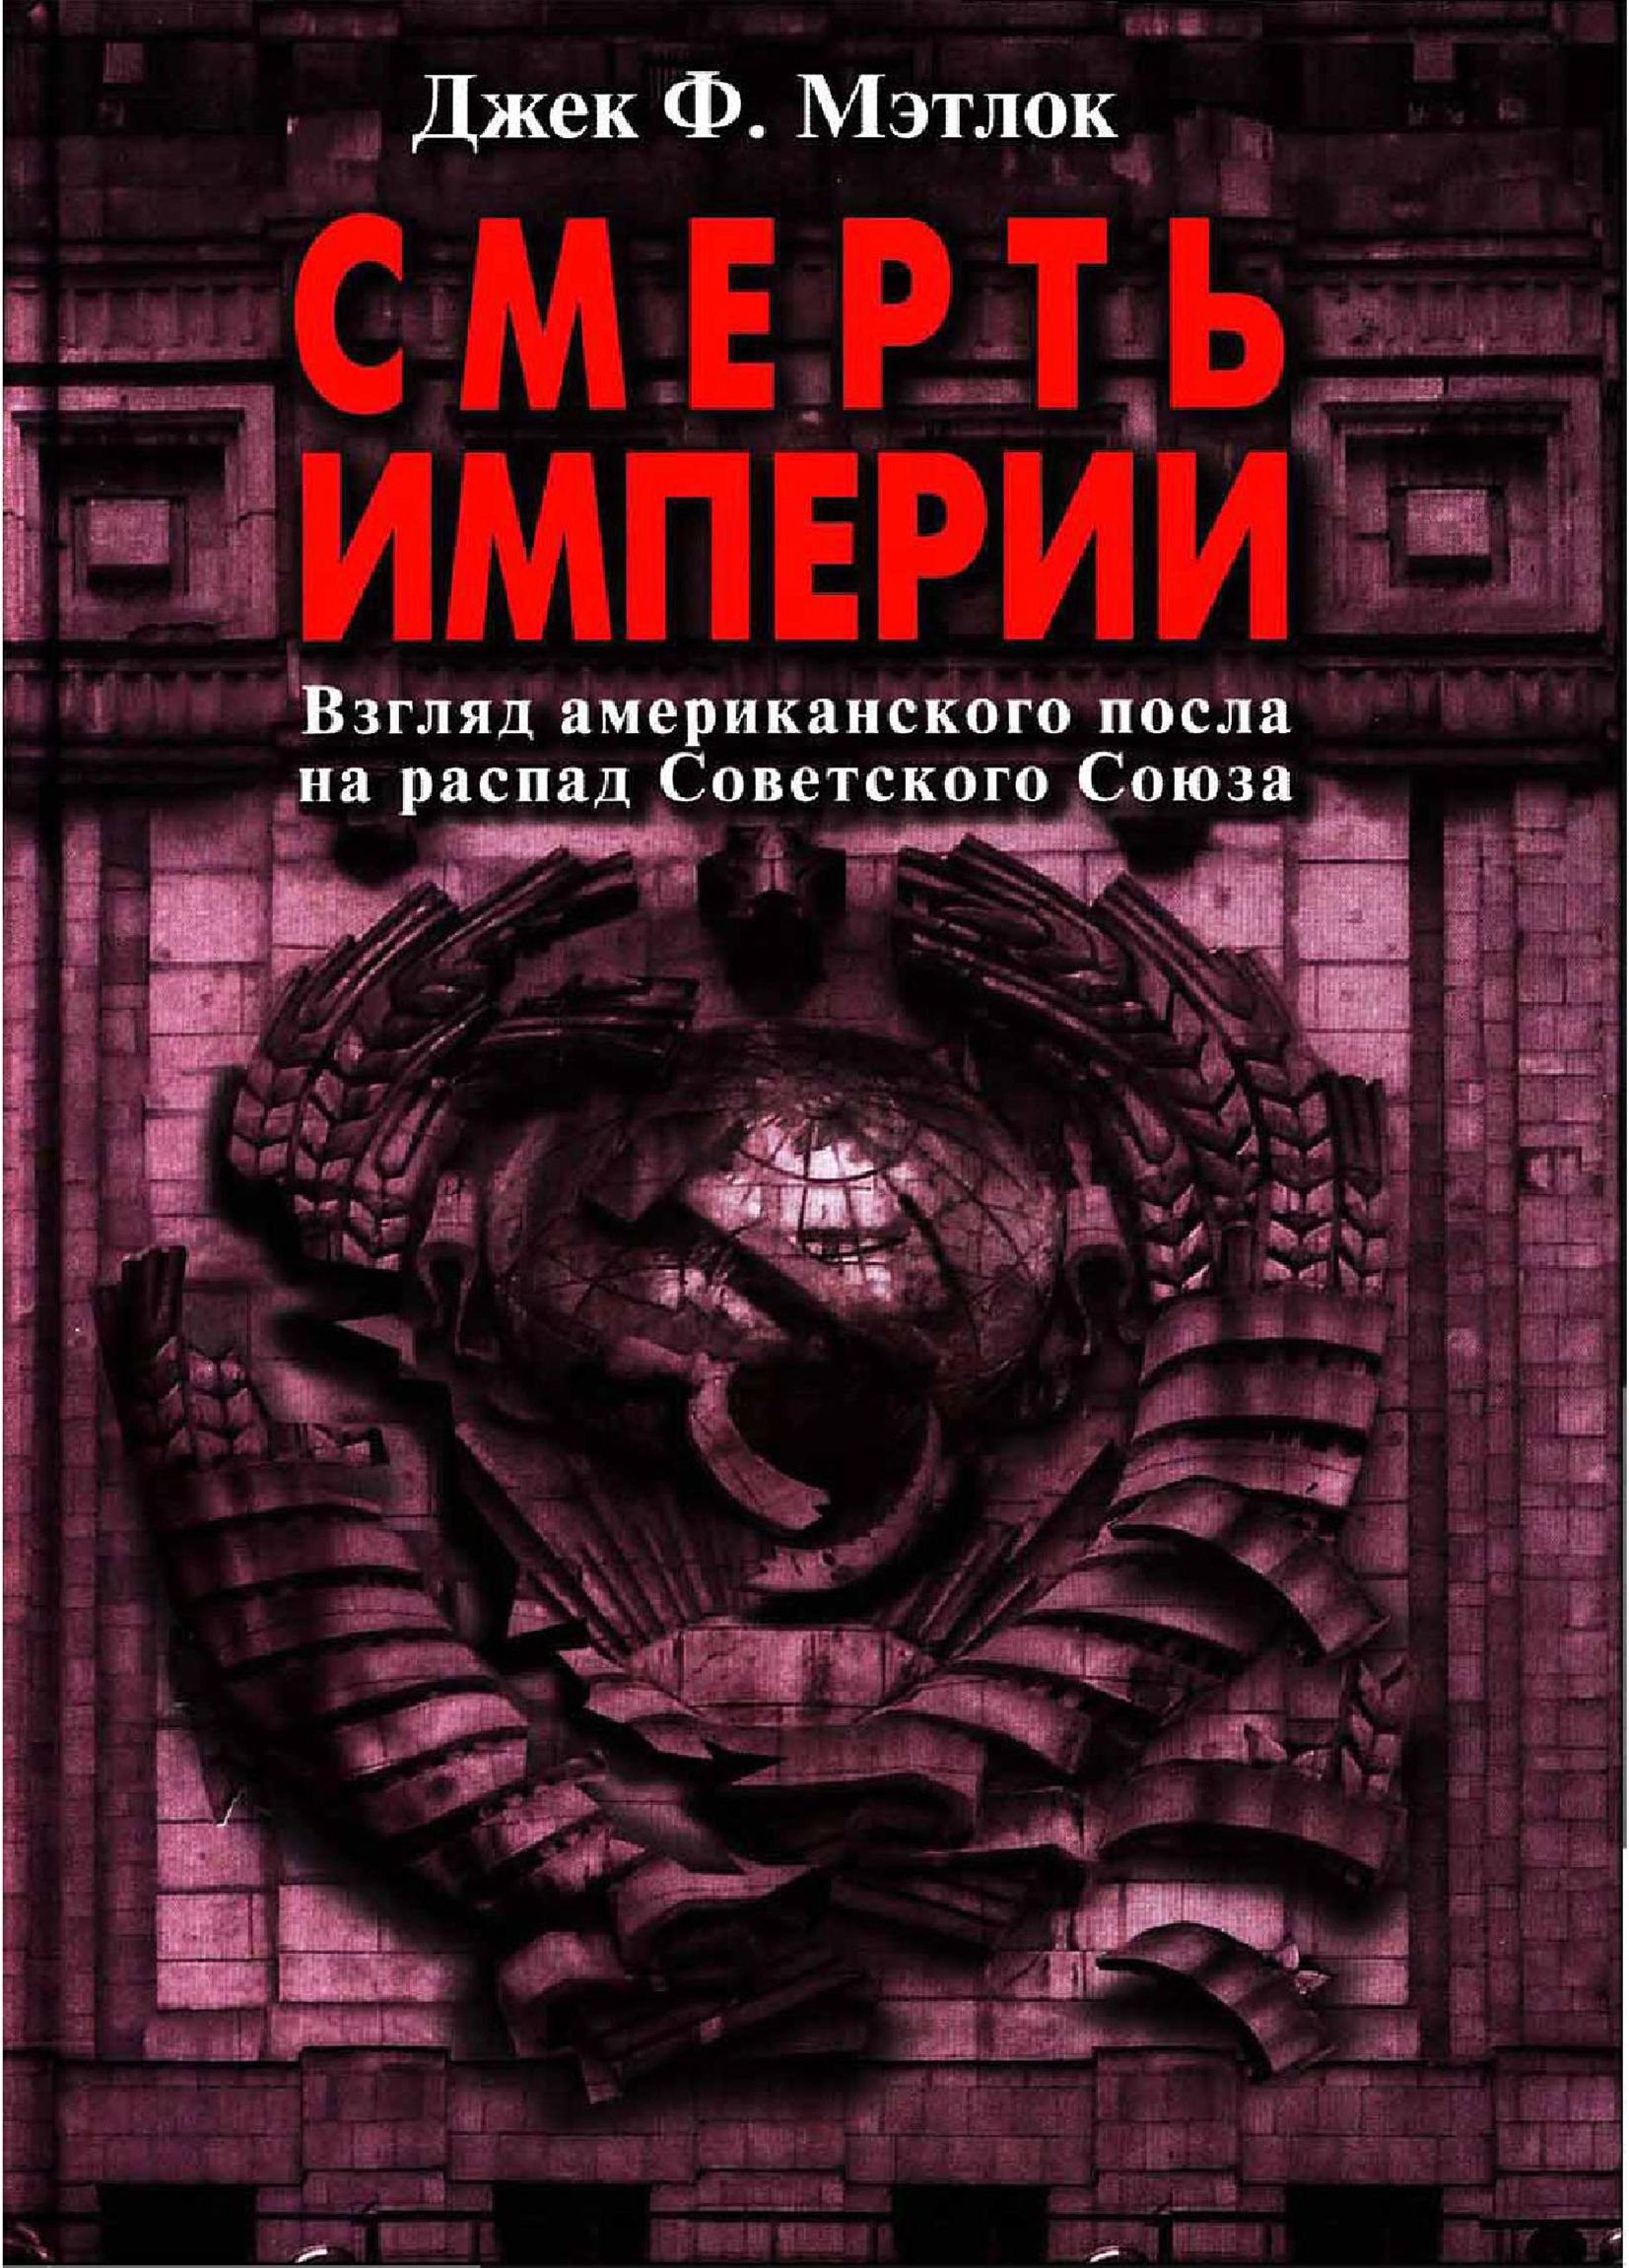 Мэтлок Джек - Смерть империи (Взгляд американского посла на распад Советского Союза) скачать бесплатно